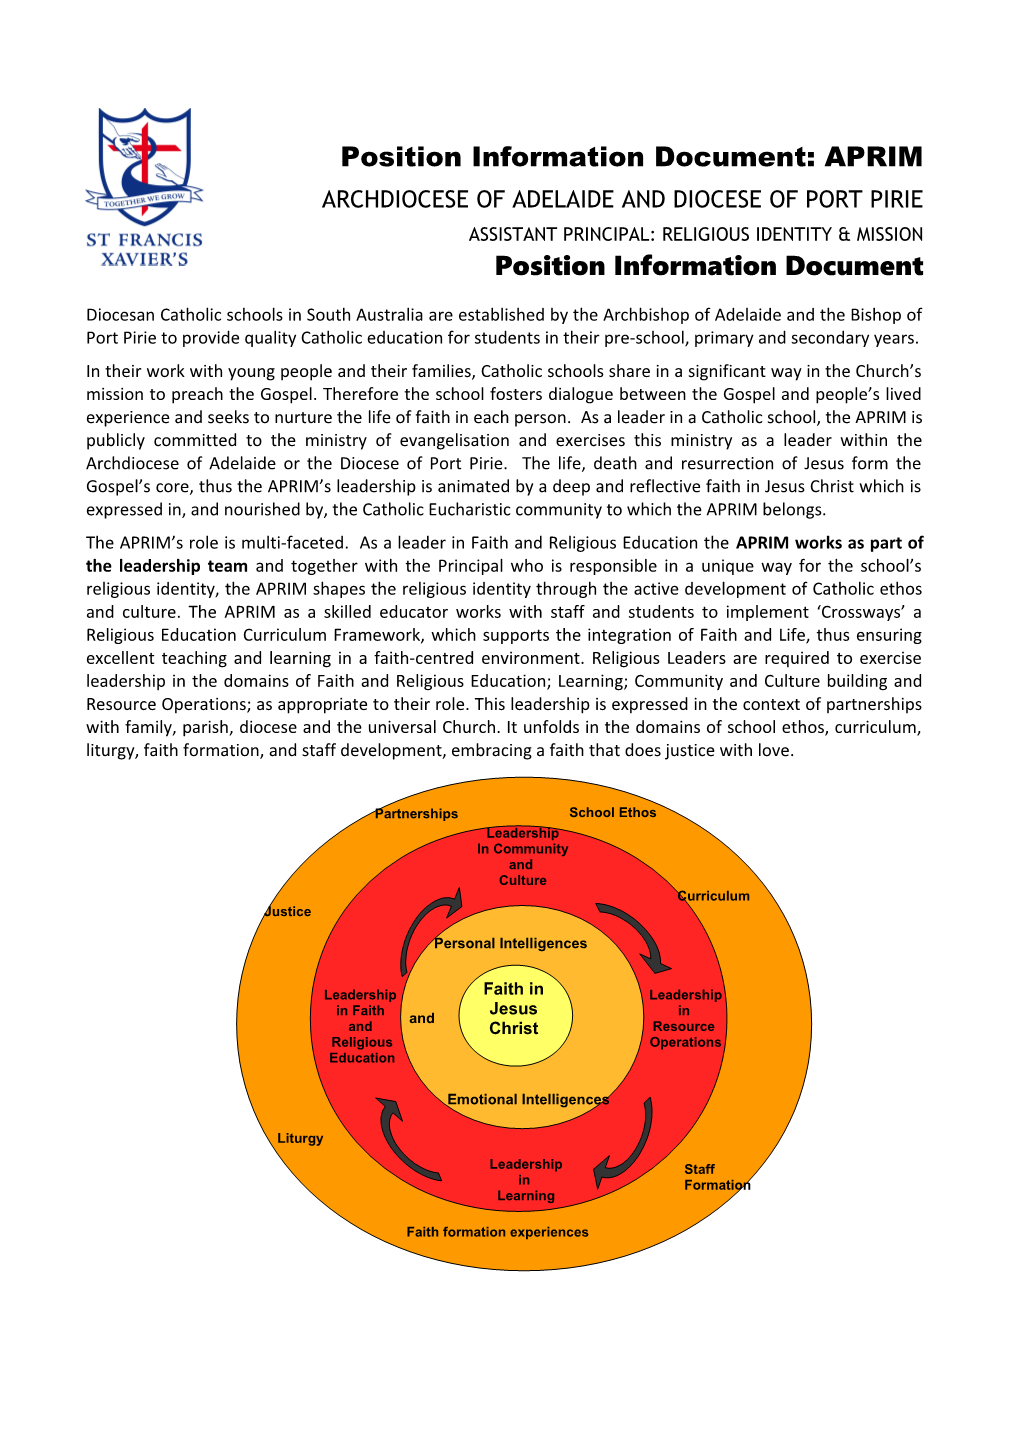 Position Information Document: Aprim